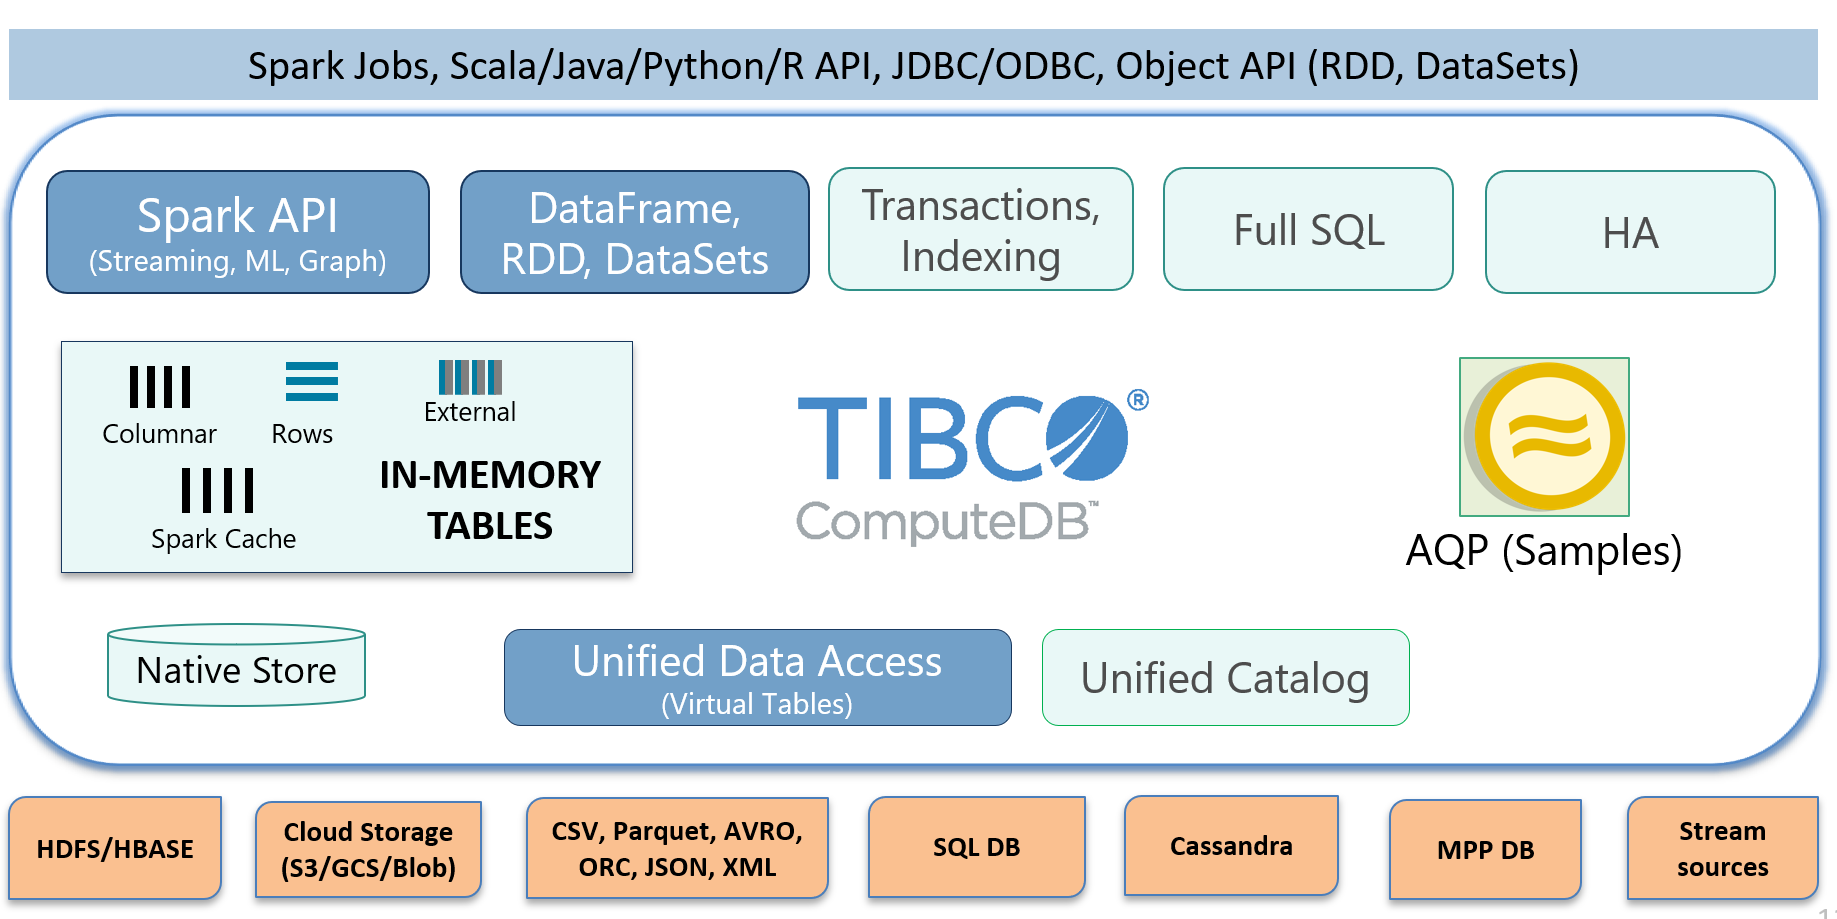 TIBCO ComputeDB Architecture